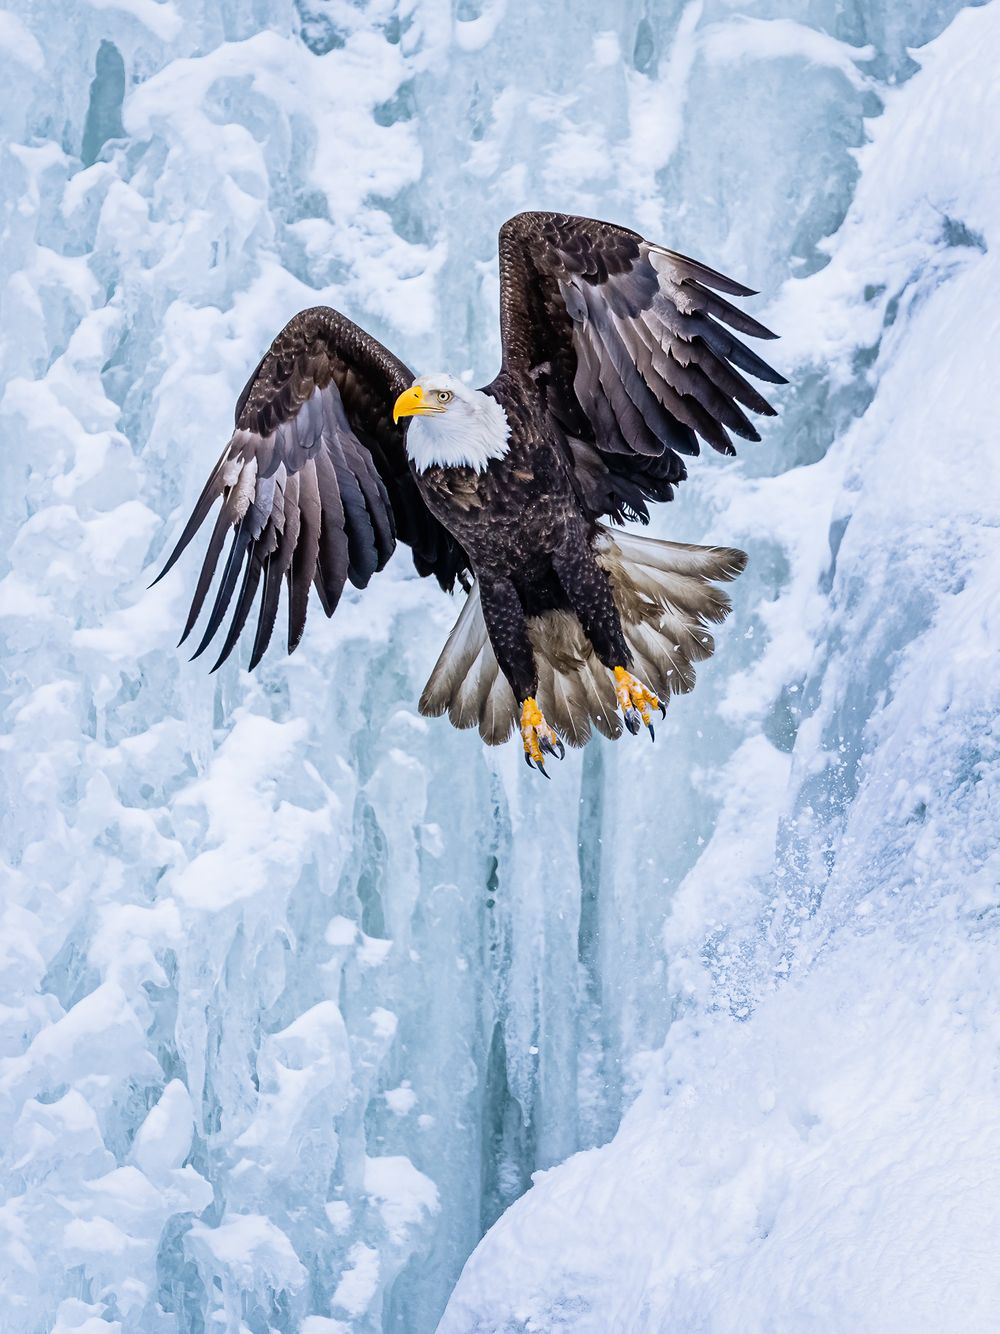 frozen_waterfall_eagle_liftoff.jpg